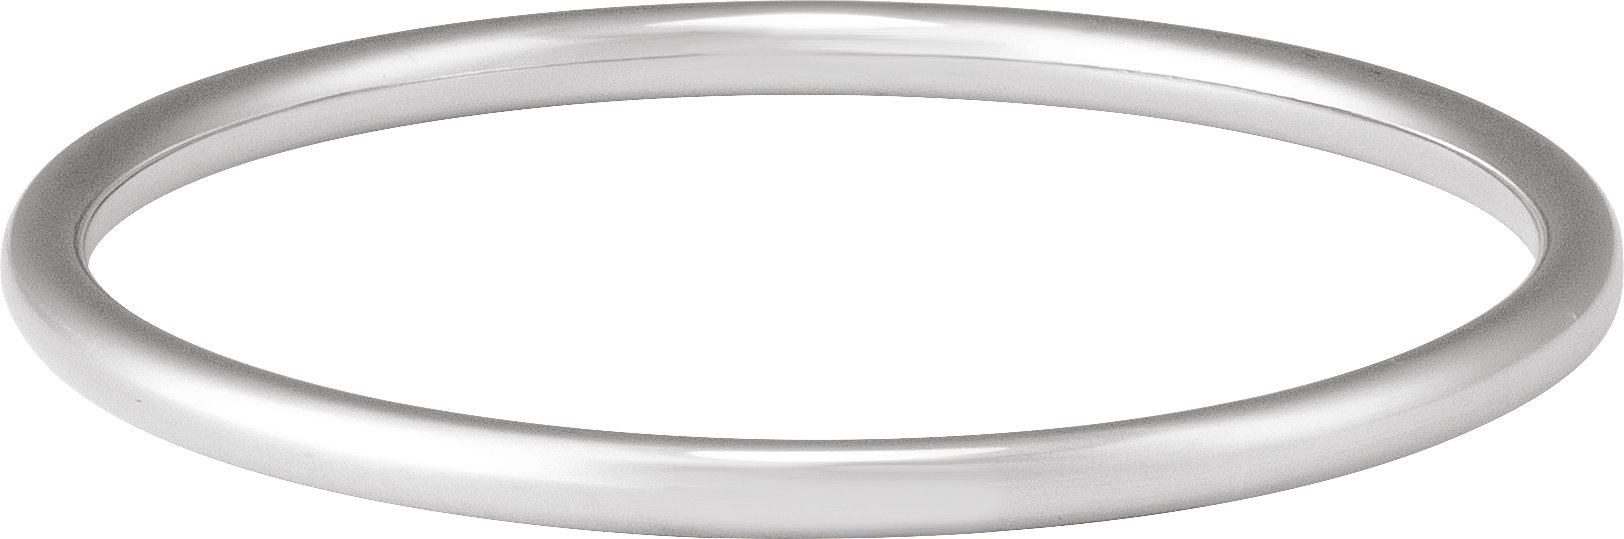 Sterling Silver 4 mm Bangle 7 1/2" Bracelet